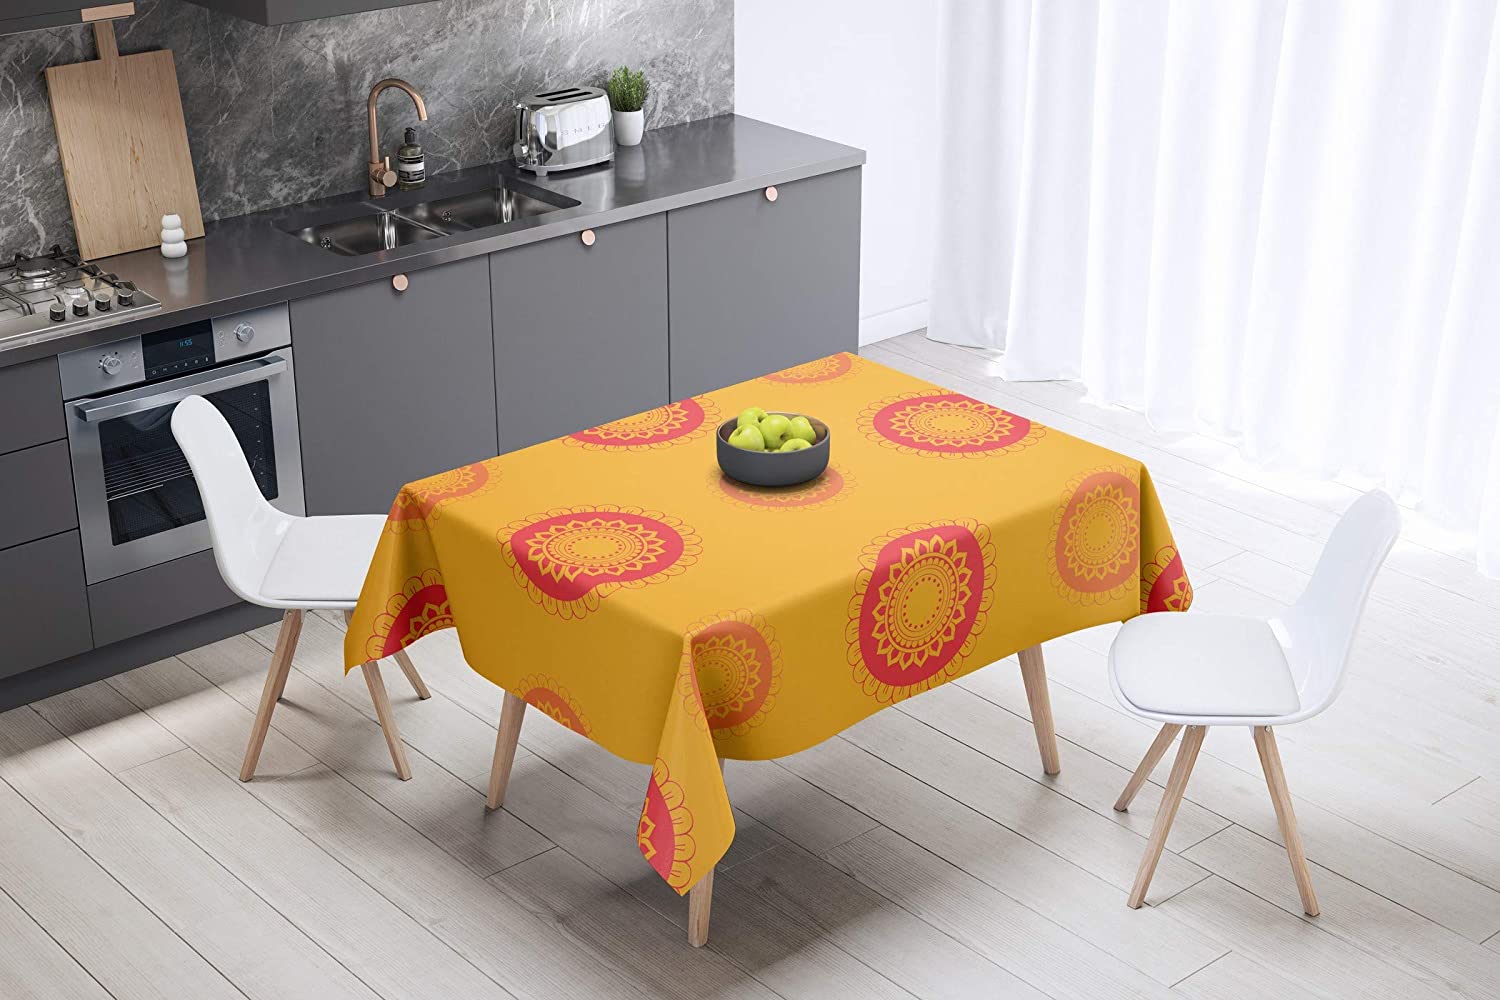 Bonamaison Sun Flower Design Orange Tablecloth 140cm x 140cm RRP £8.10 CLEARANCE XL £5.99